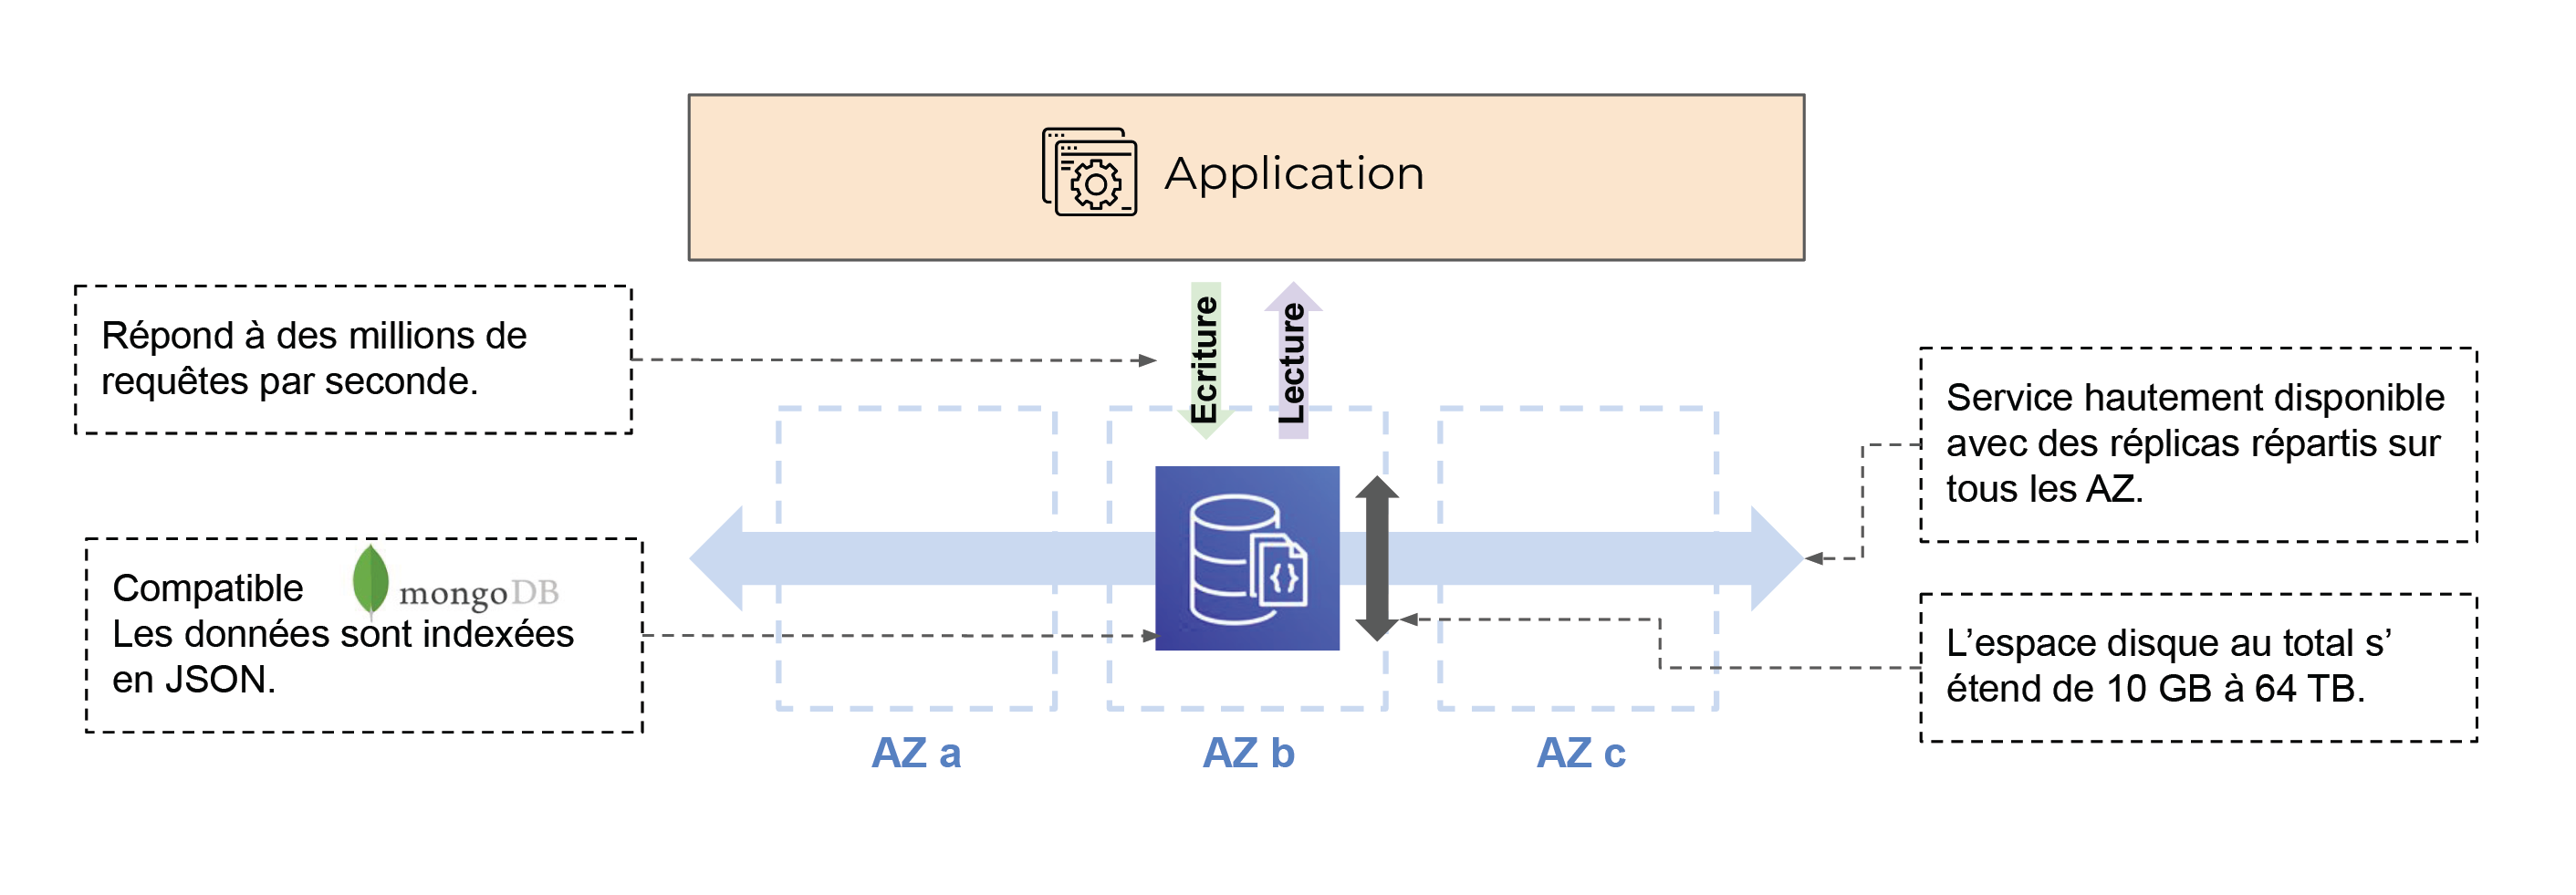 Schéma en 2 niveaux : application et les AZ a-c reliés entre eux par une flèche (Service hautement disponible avec des réplicas répartis sur tous les AZ.). AZ b comporte DynamoDB (Compatible mongoDB. Les données sont indexées en JSON. L’espace di